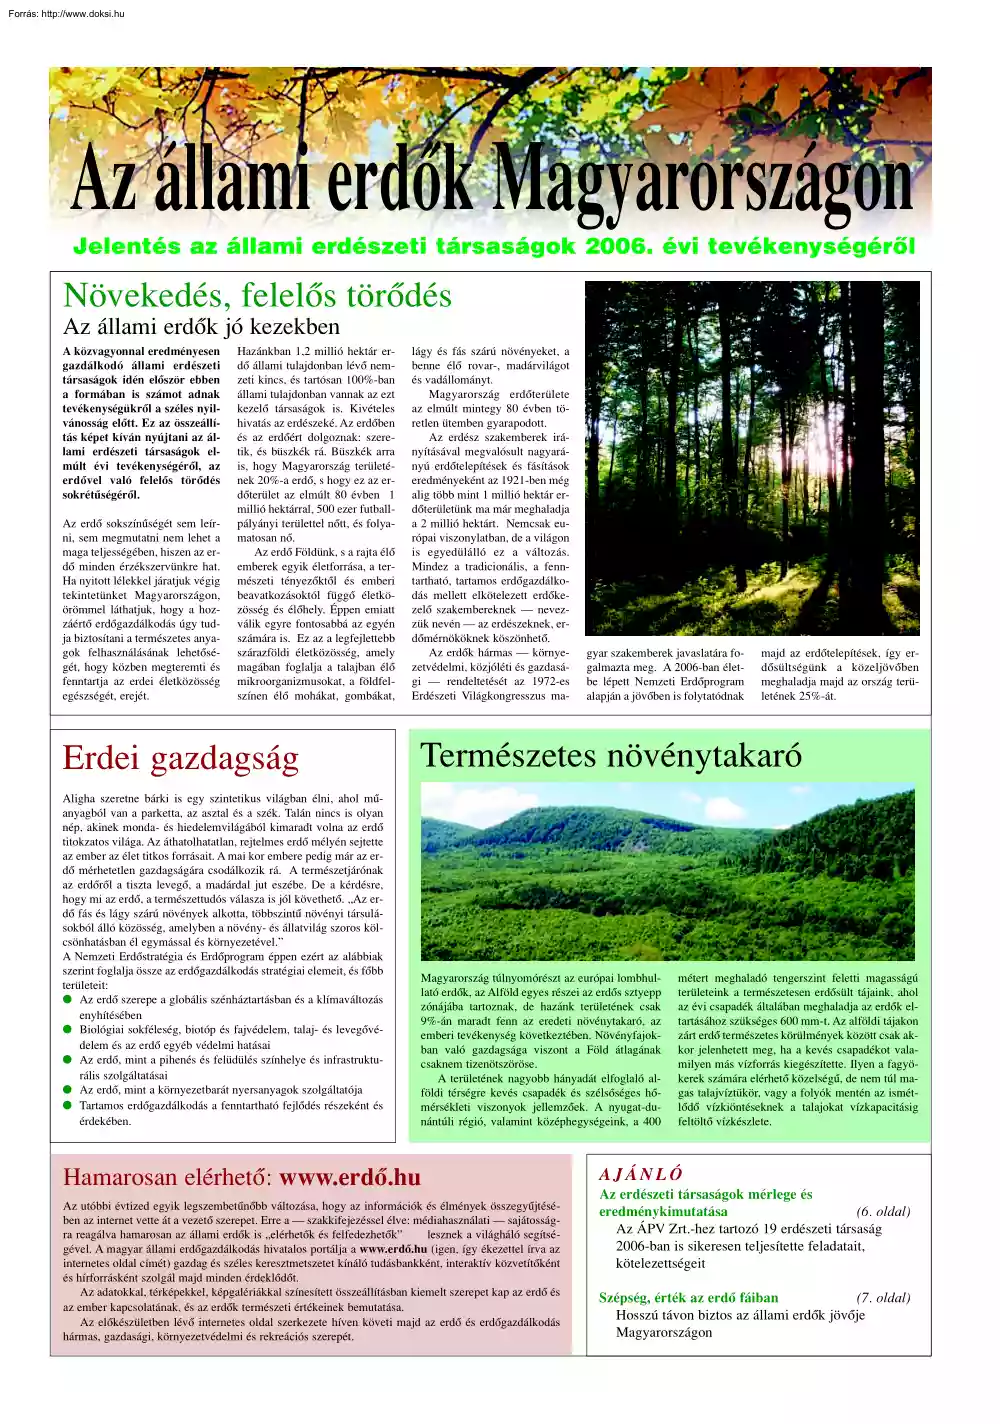 Az állami erdők Magyarországon